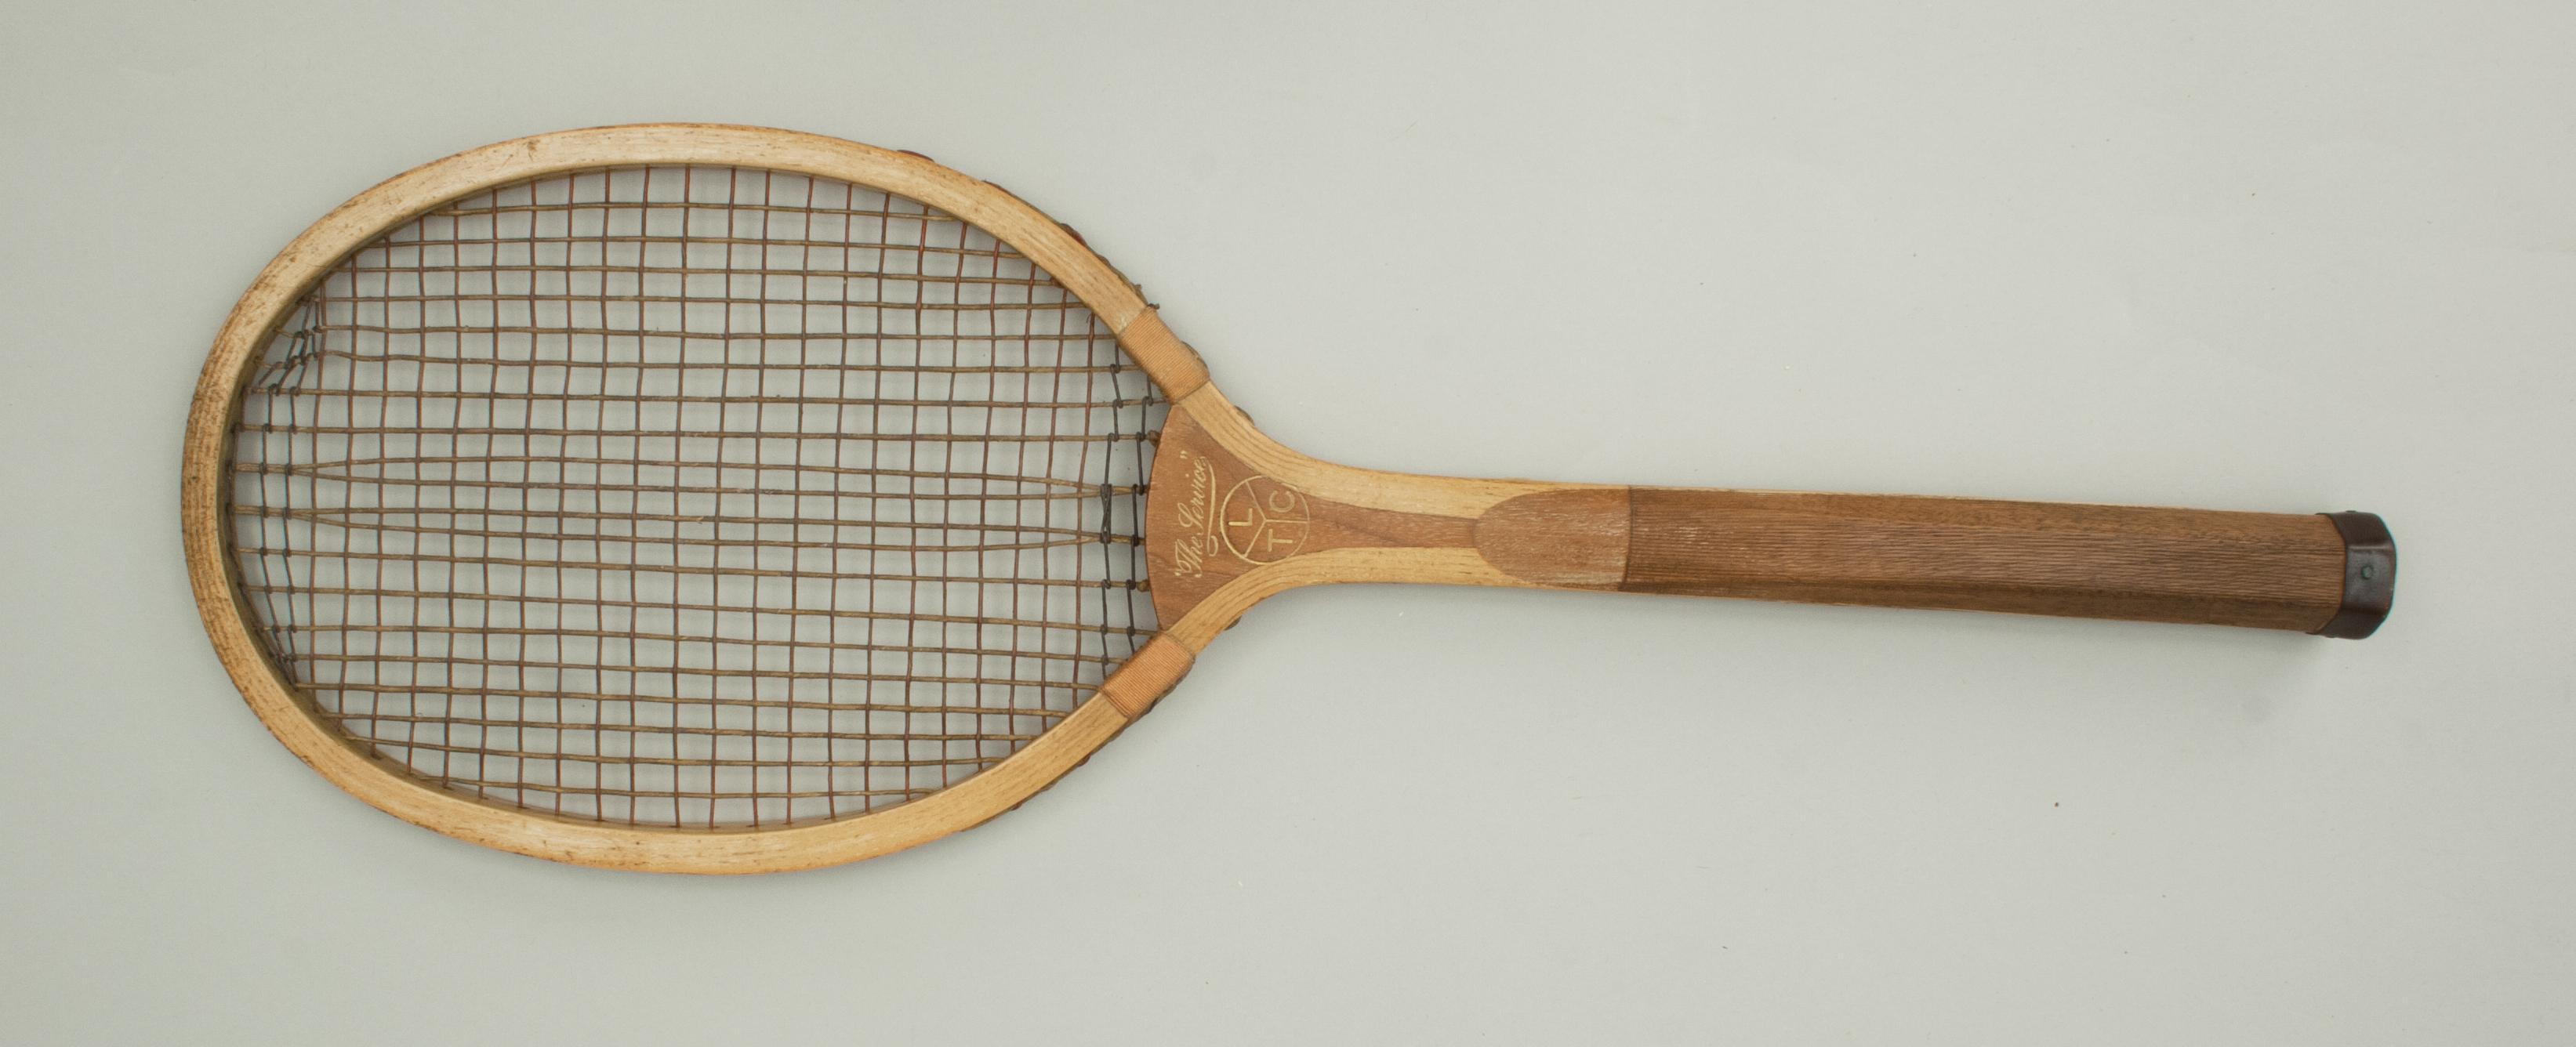 wooden tennis racket